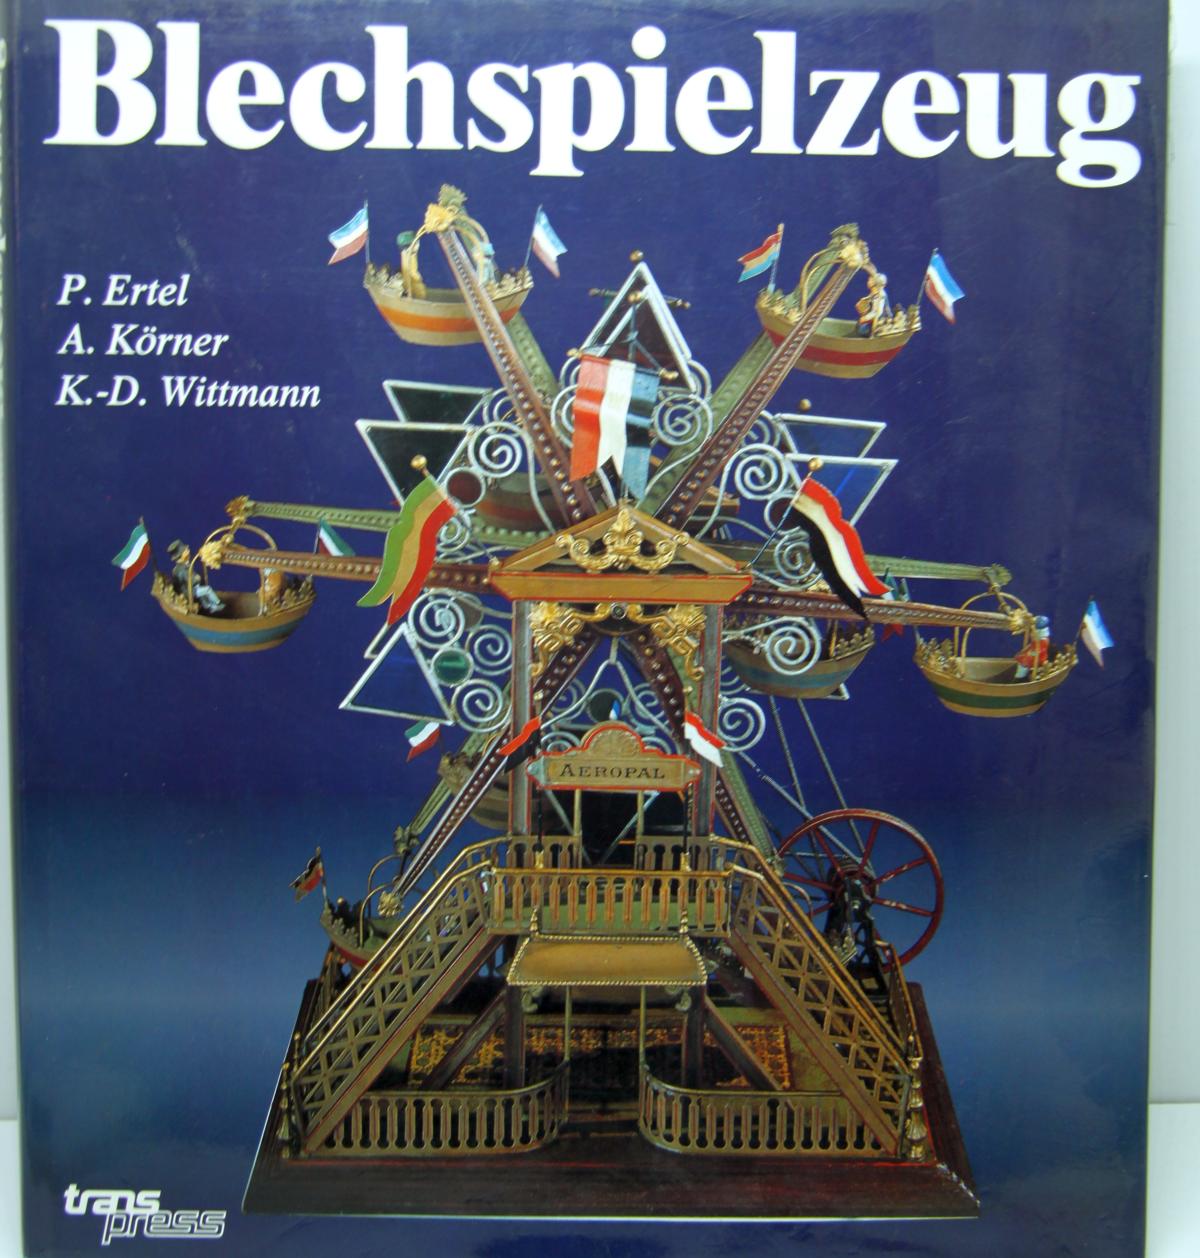 Buch "Blechspielzeug"  von P. Ertel, A. Körner und K.-D. Wittmann, Transpress Verlag